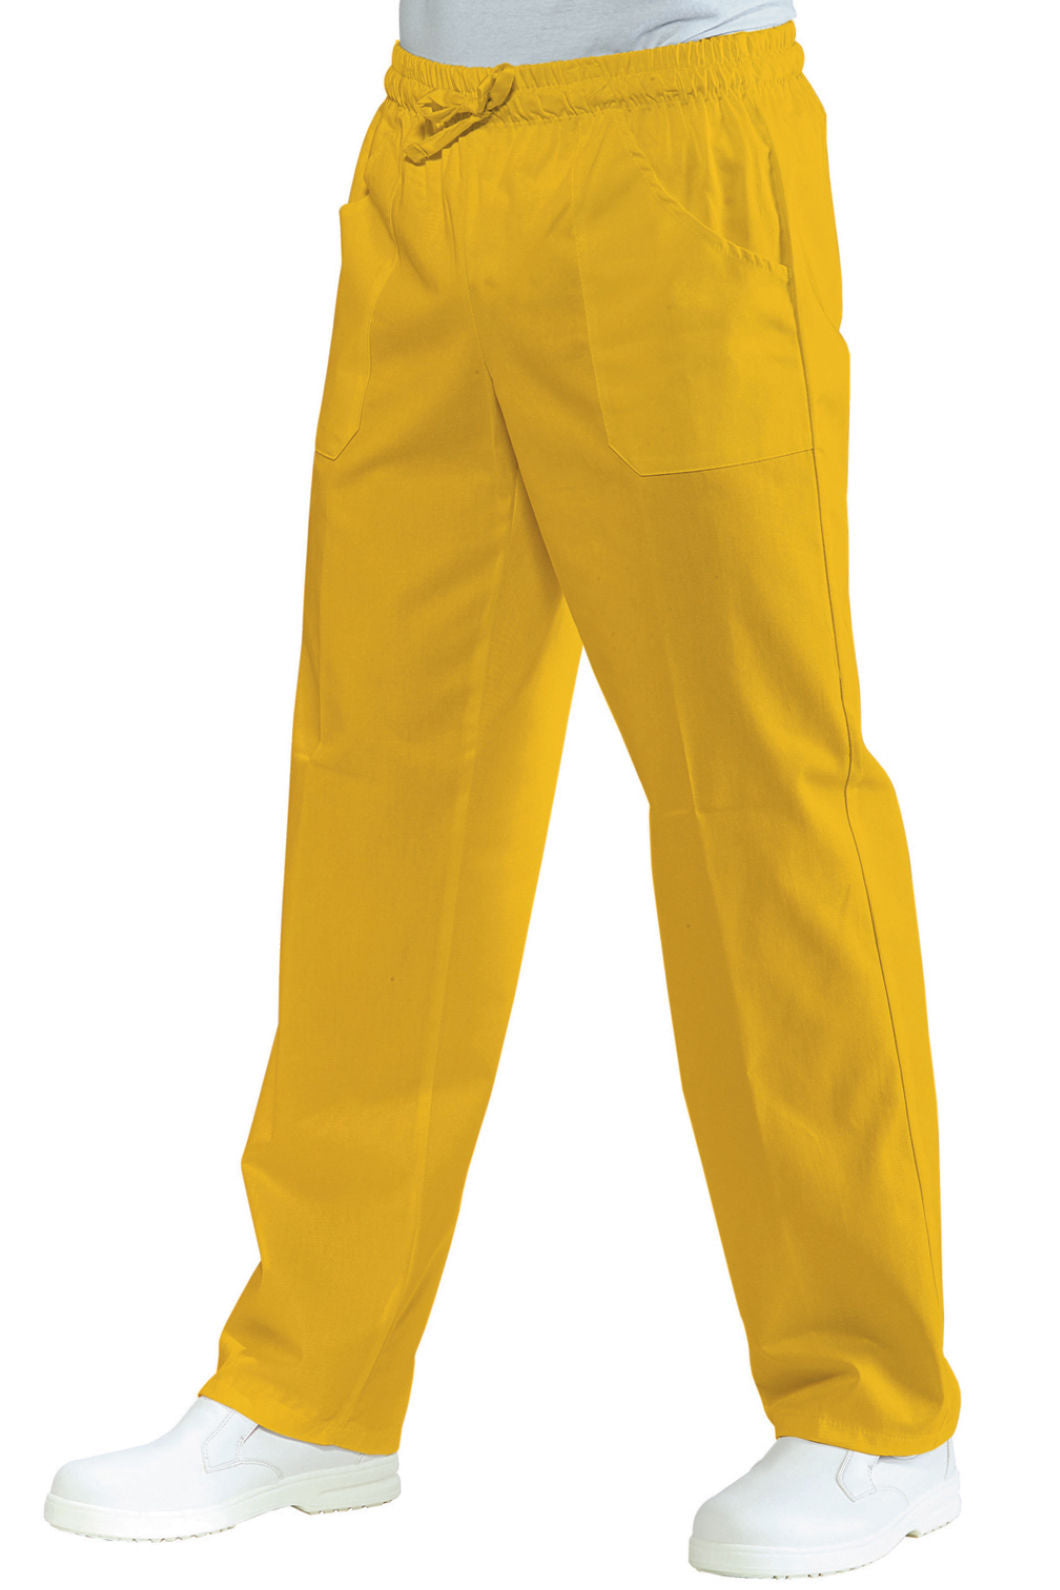    pantalone-con-elastico-colore-giallo-isacco-044714